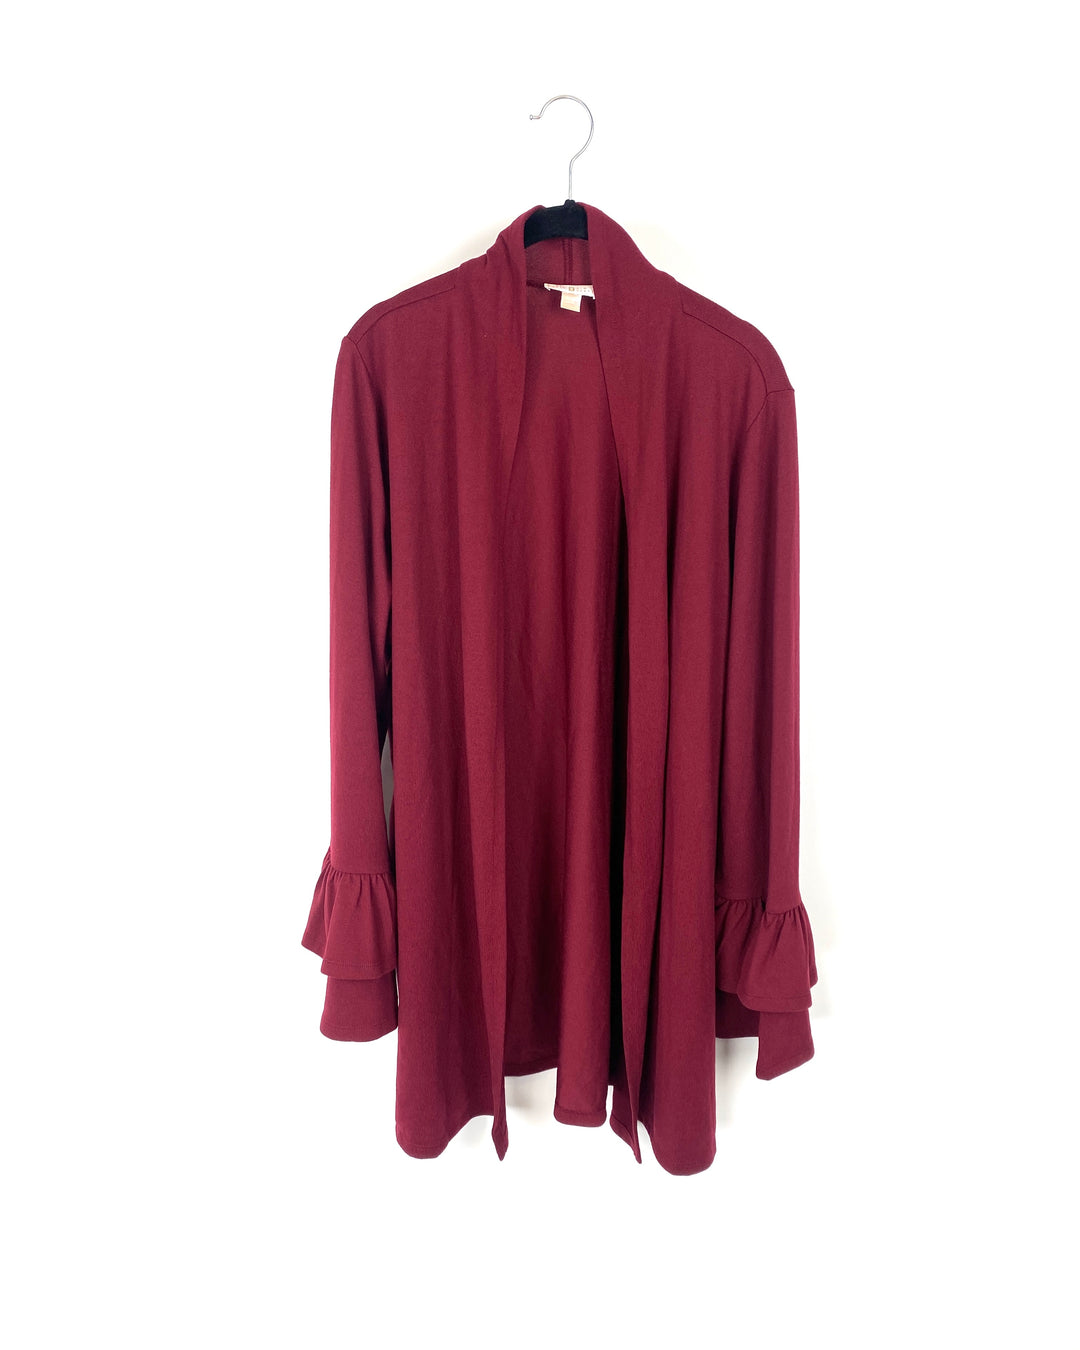 Red Ruffled Sleeve Cardigan - Large/Extra Large